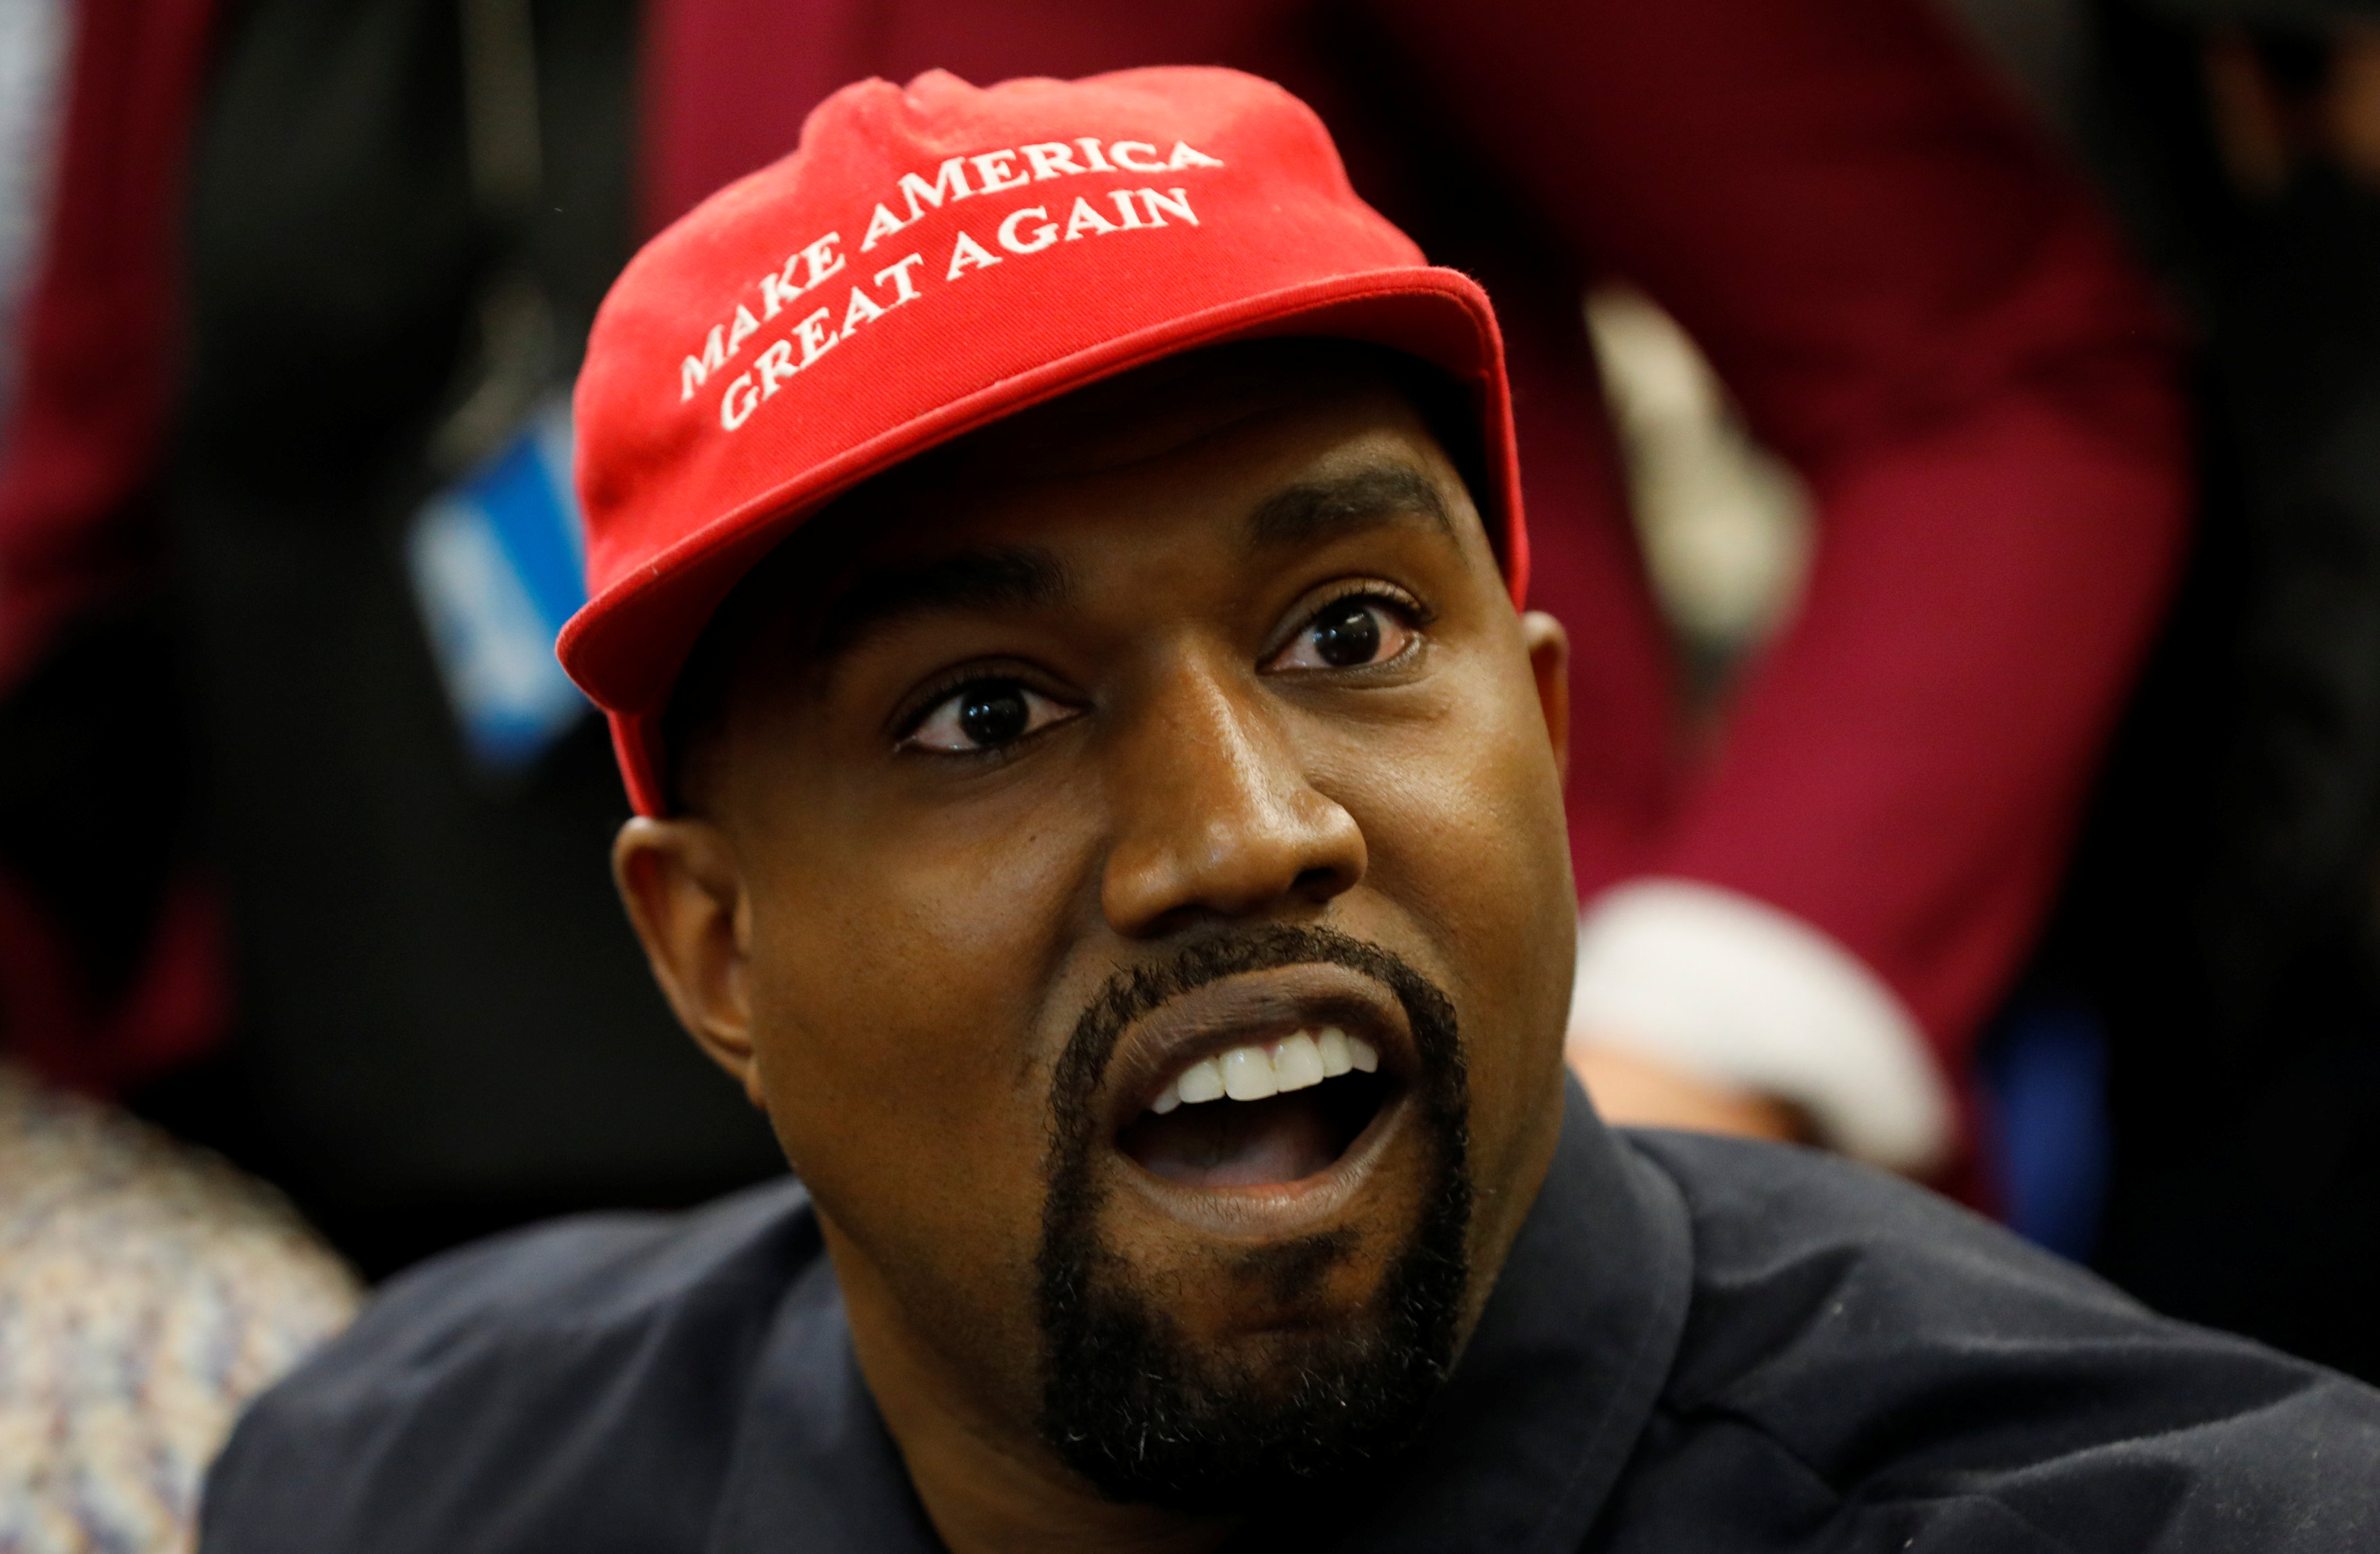 ¡Pendiente Kim! Durante la reunión con Trump una cámara captó la contraseña del celular de Kanye West (Video)